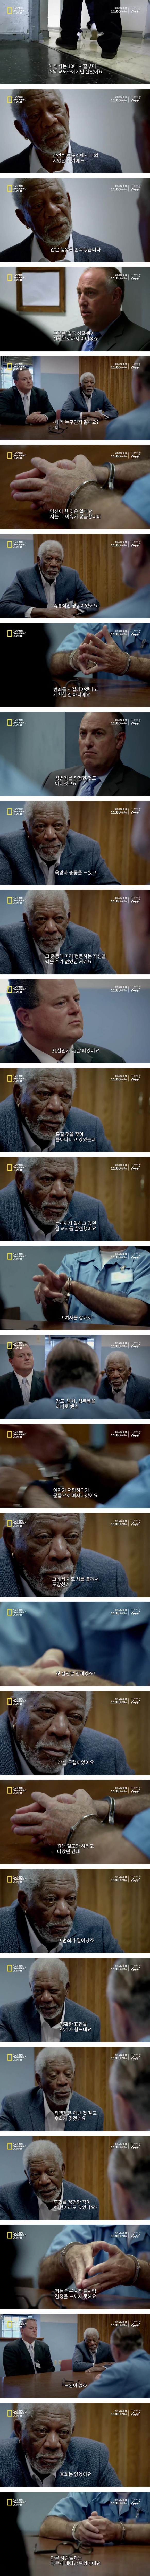 Screenshot_2019-08-13 모건 프리먼, 상위 1_ 싸이코패스 범죄자를 만나다 (1).jpg